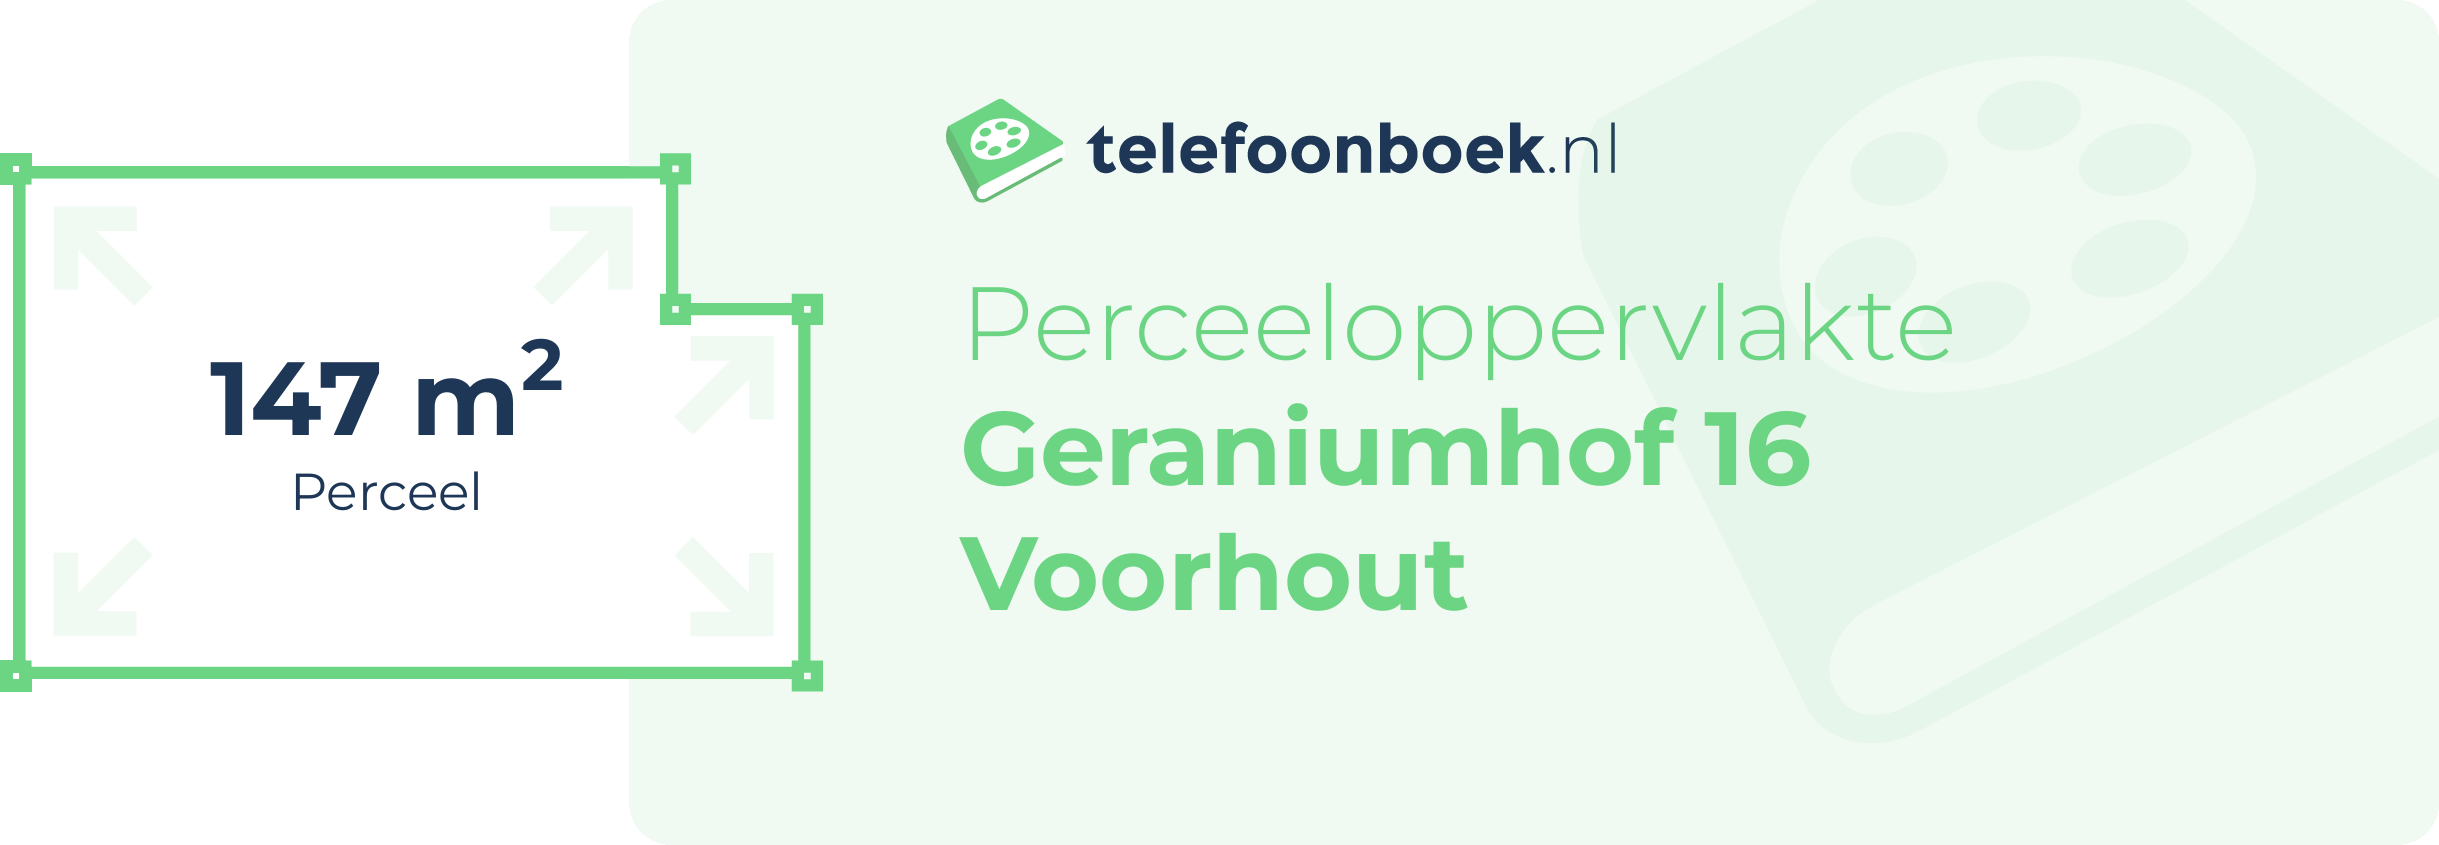 Perceeloppervlakte Geraniumhof 16 Voorhout